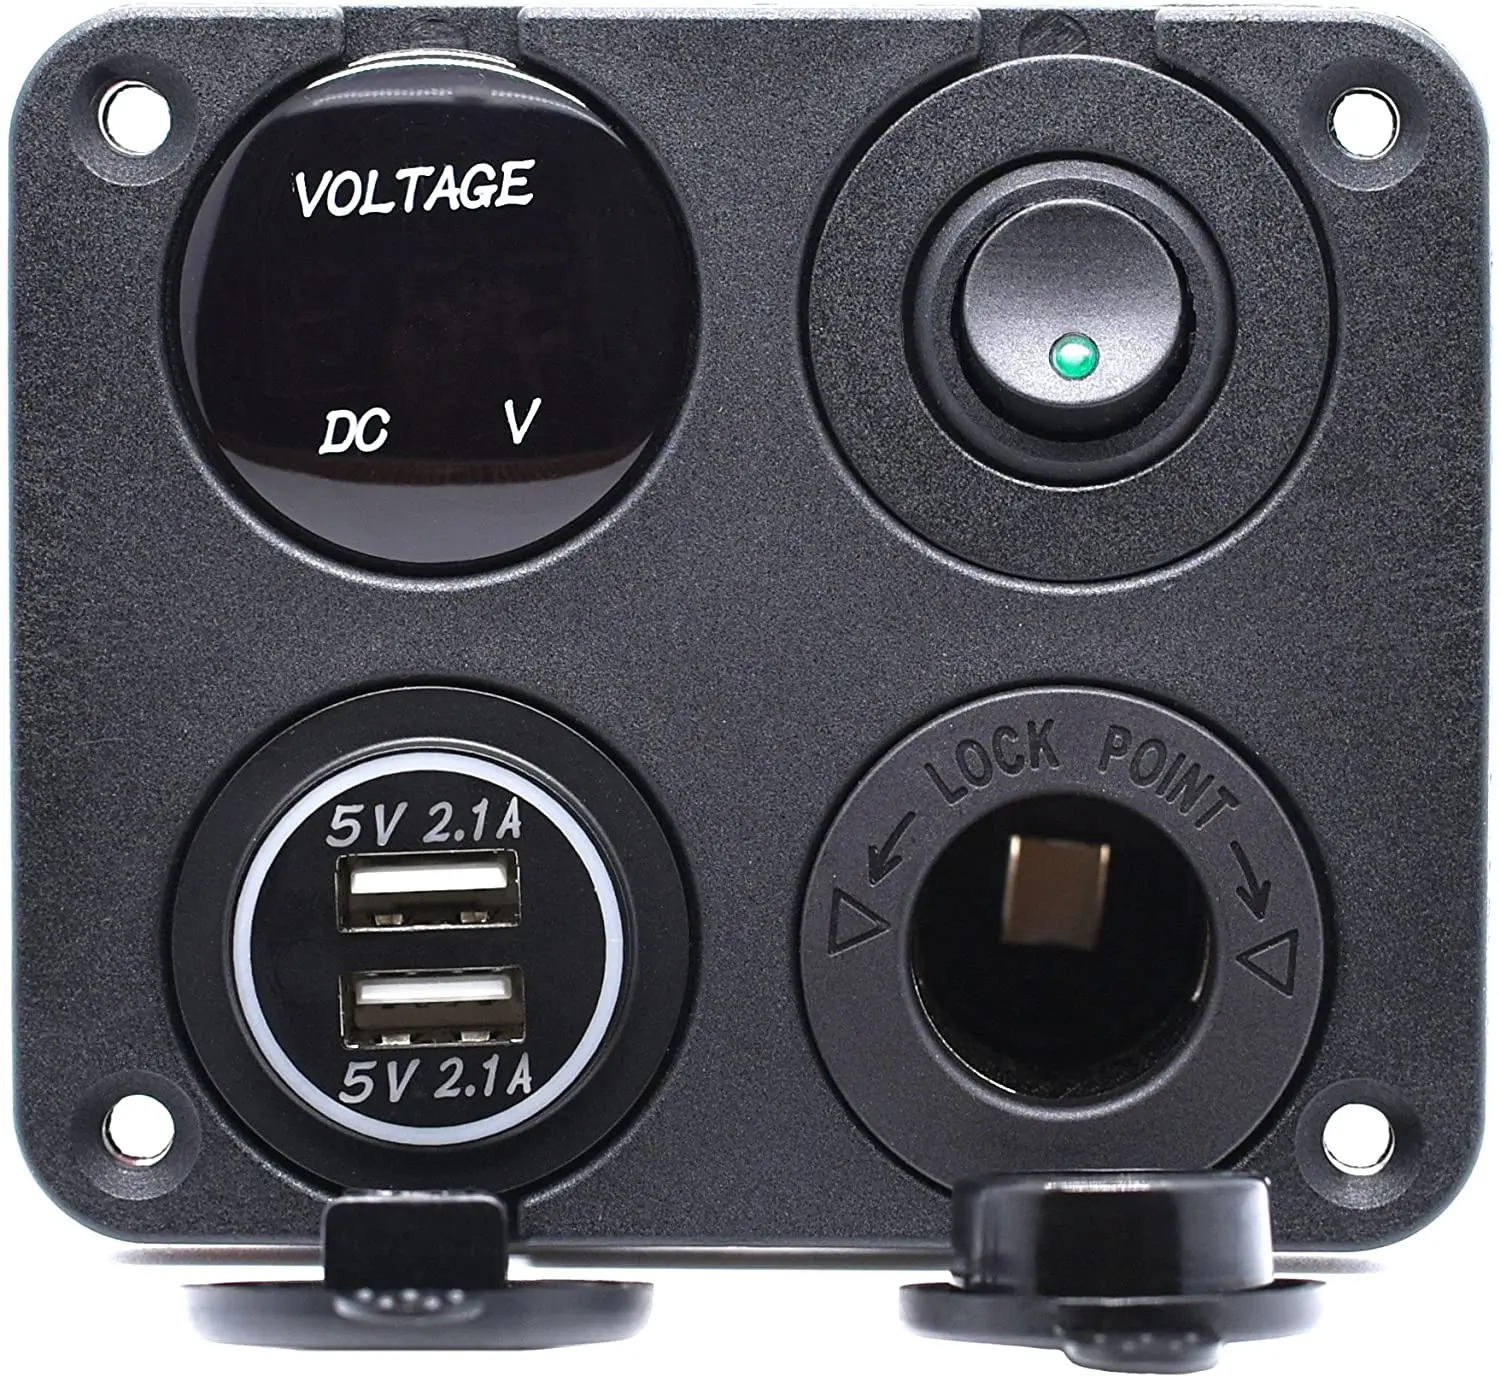 Dual USB Blue LED Outlet Adapter Charger Voltmeter 12V 24V Car ATV Boat RV